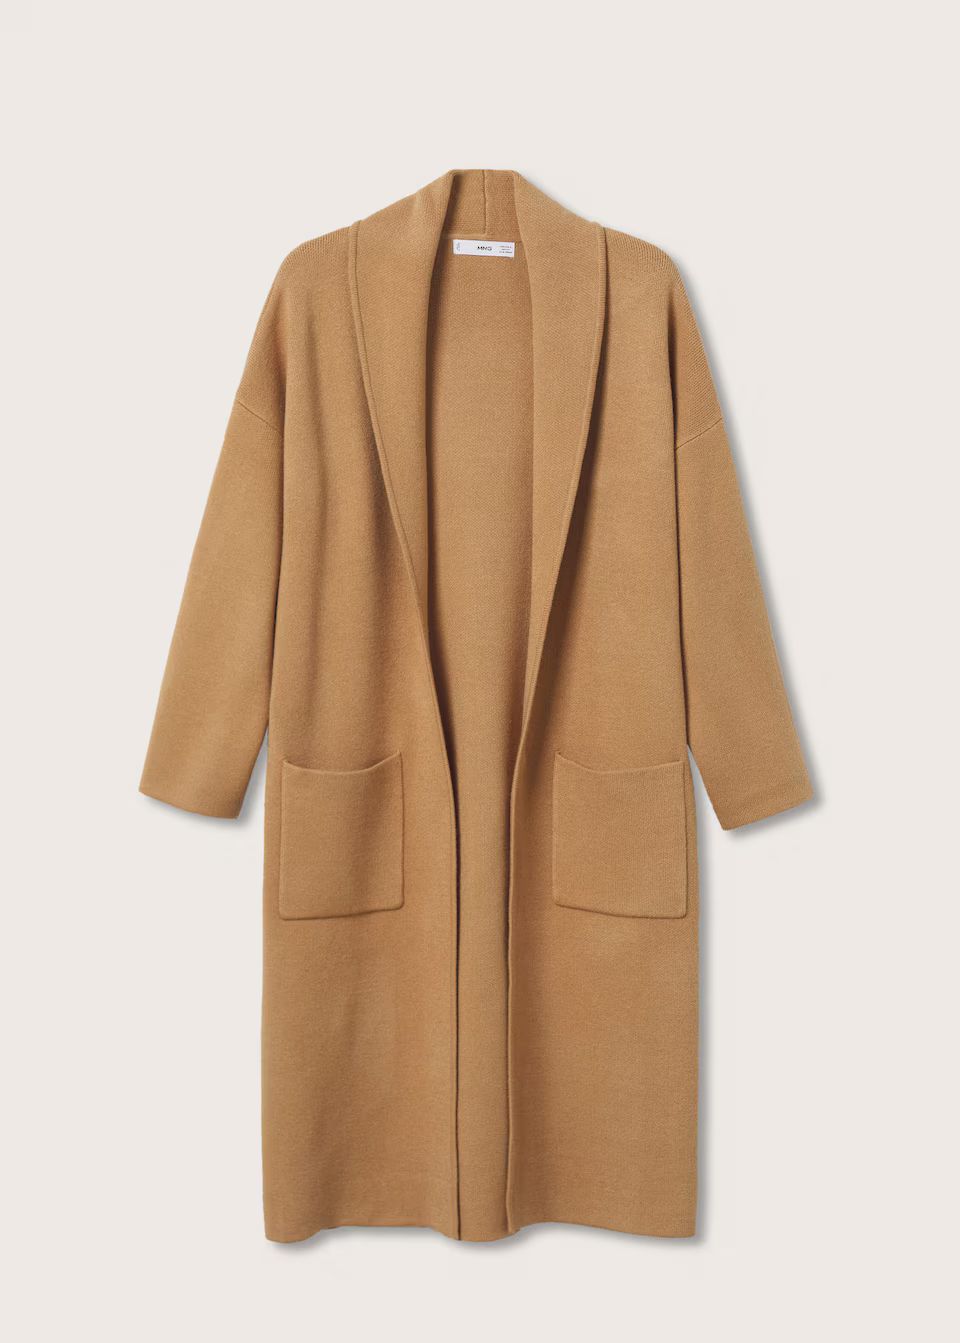 Oversized Coat with Pockets, Cardigan Coat, Camel Cardigan Coat, Mango Coatigan, Mango Coat, Fall | MANGO (US)